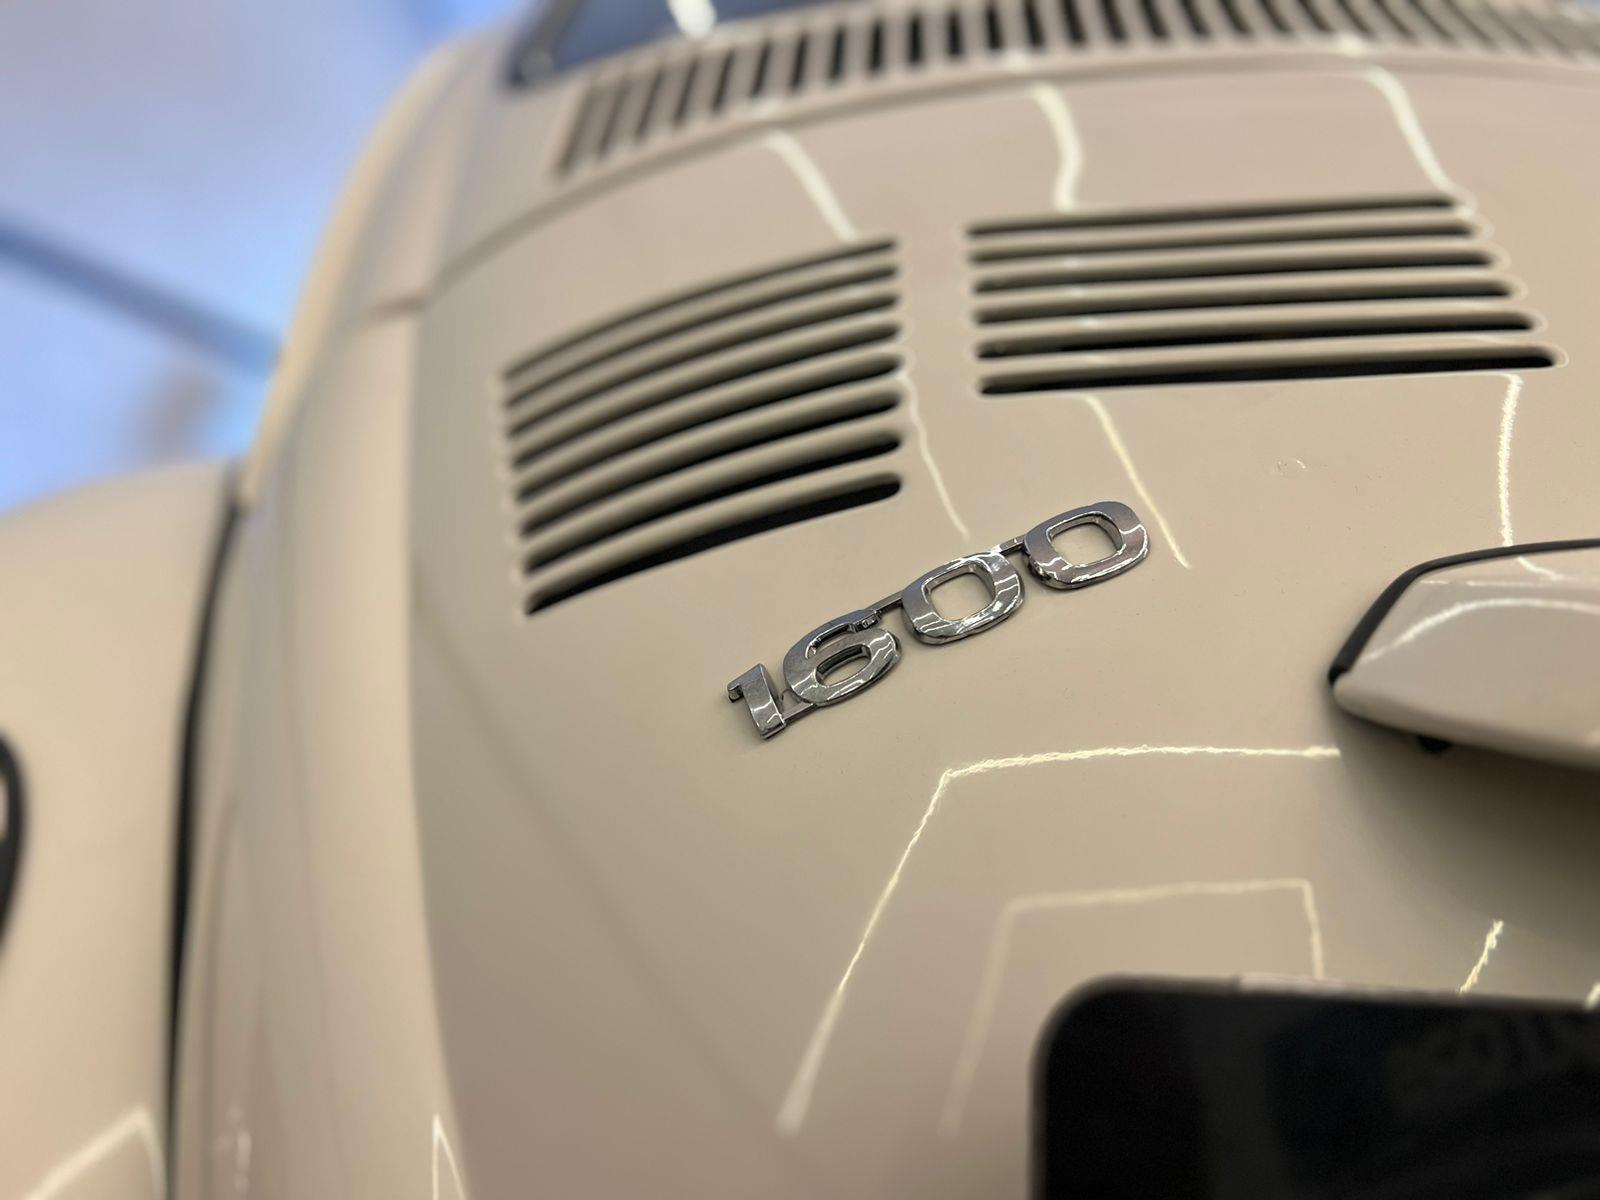 Volkswagen Fusca Branco